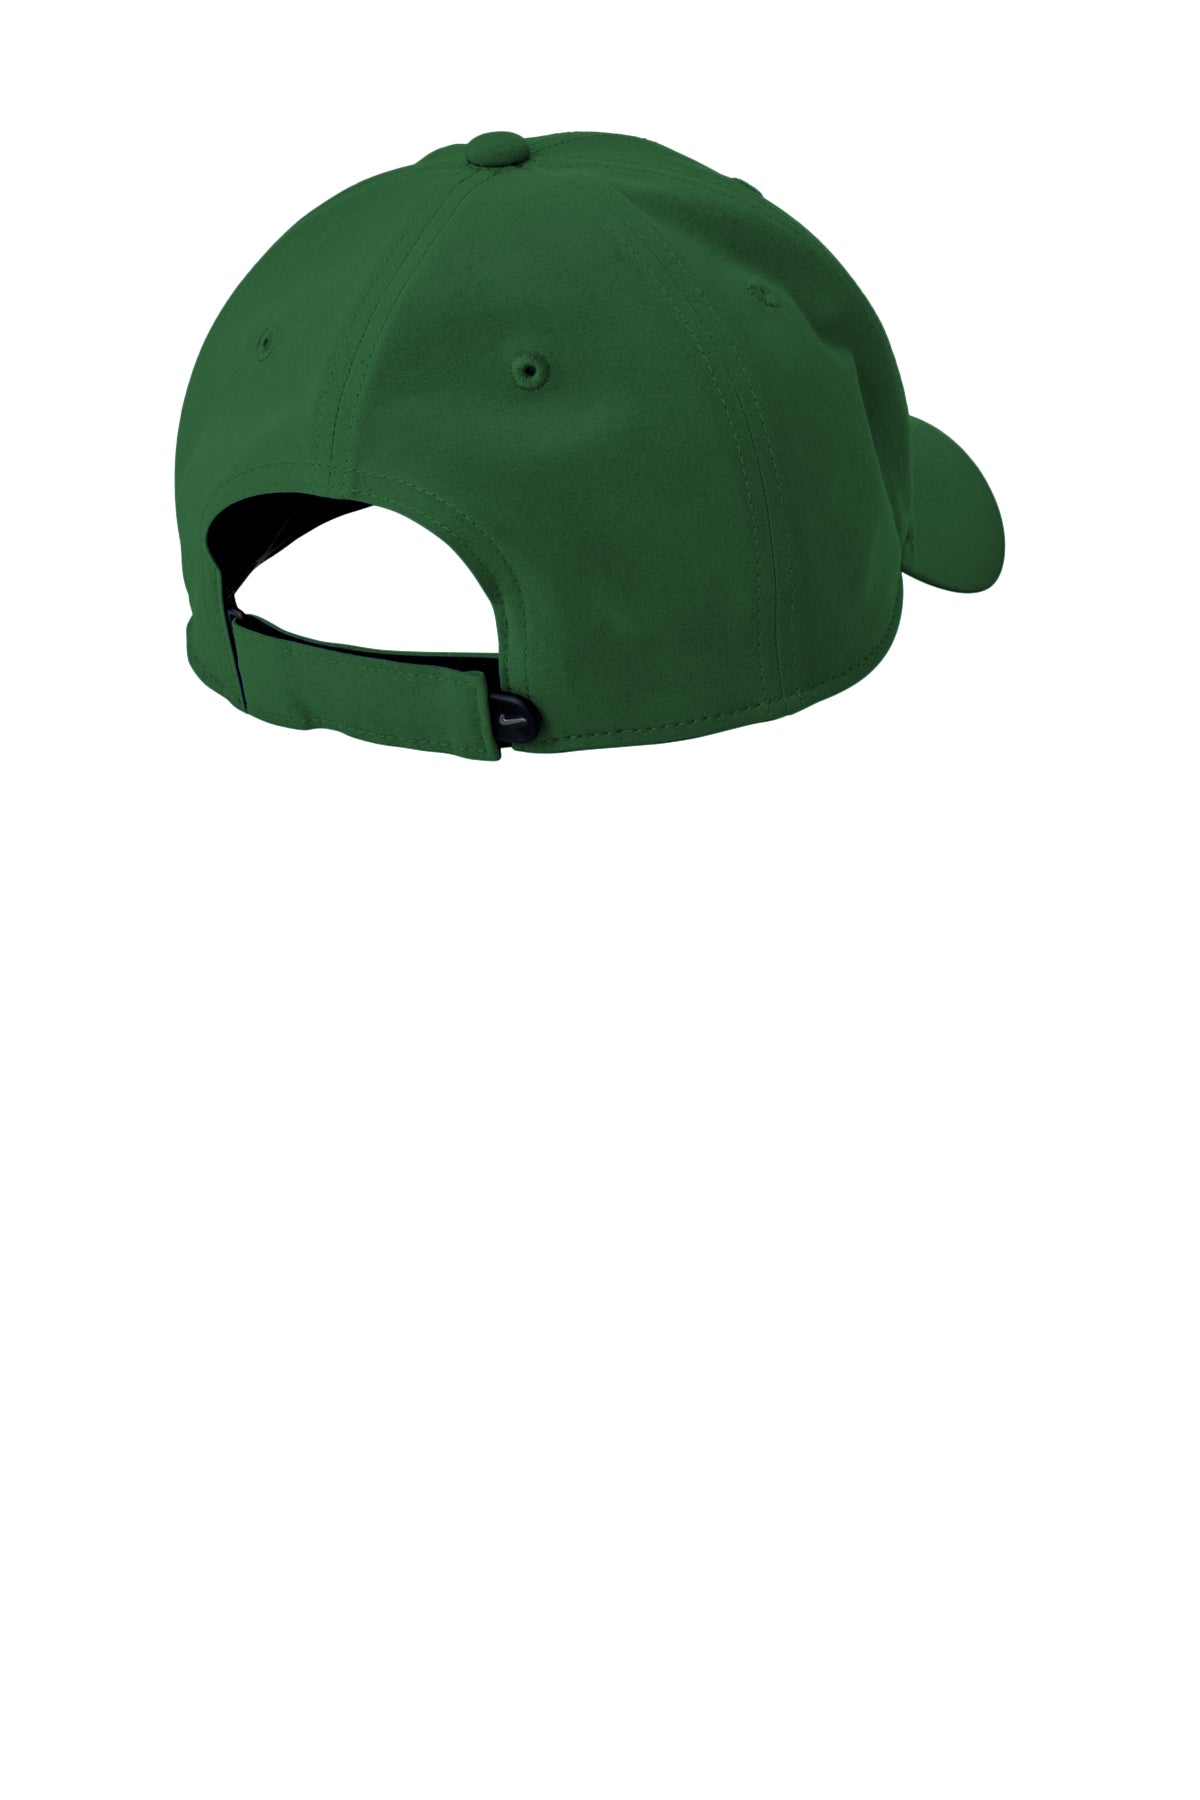 Nike Dri-FIT Legacy Custom Caps, Gorge Green